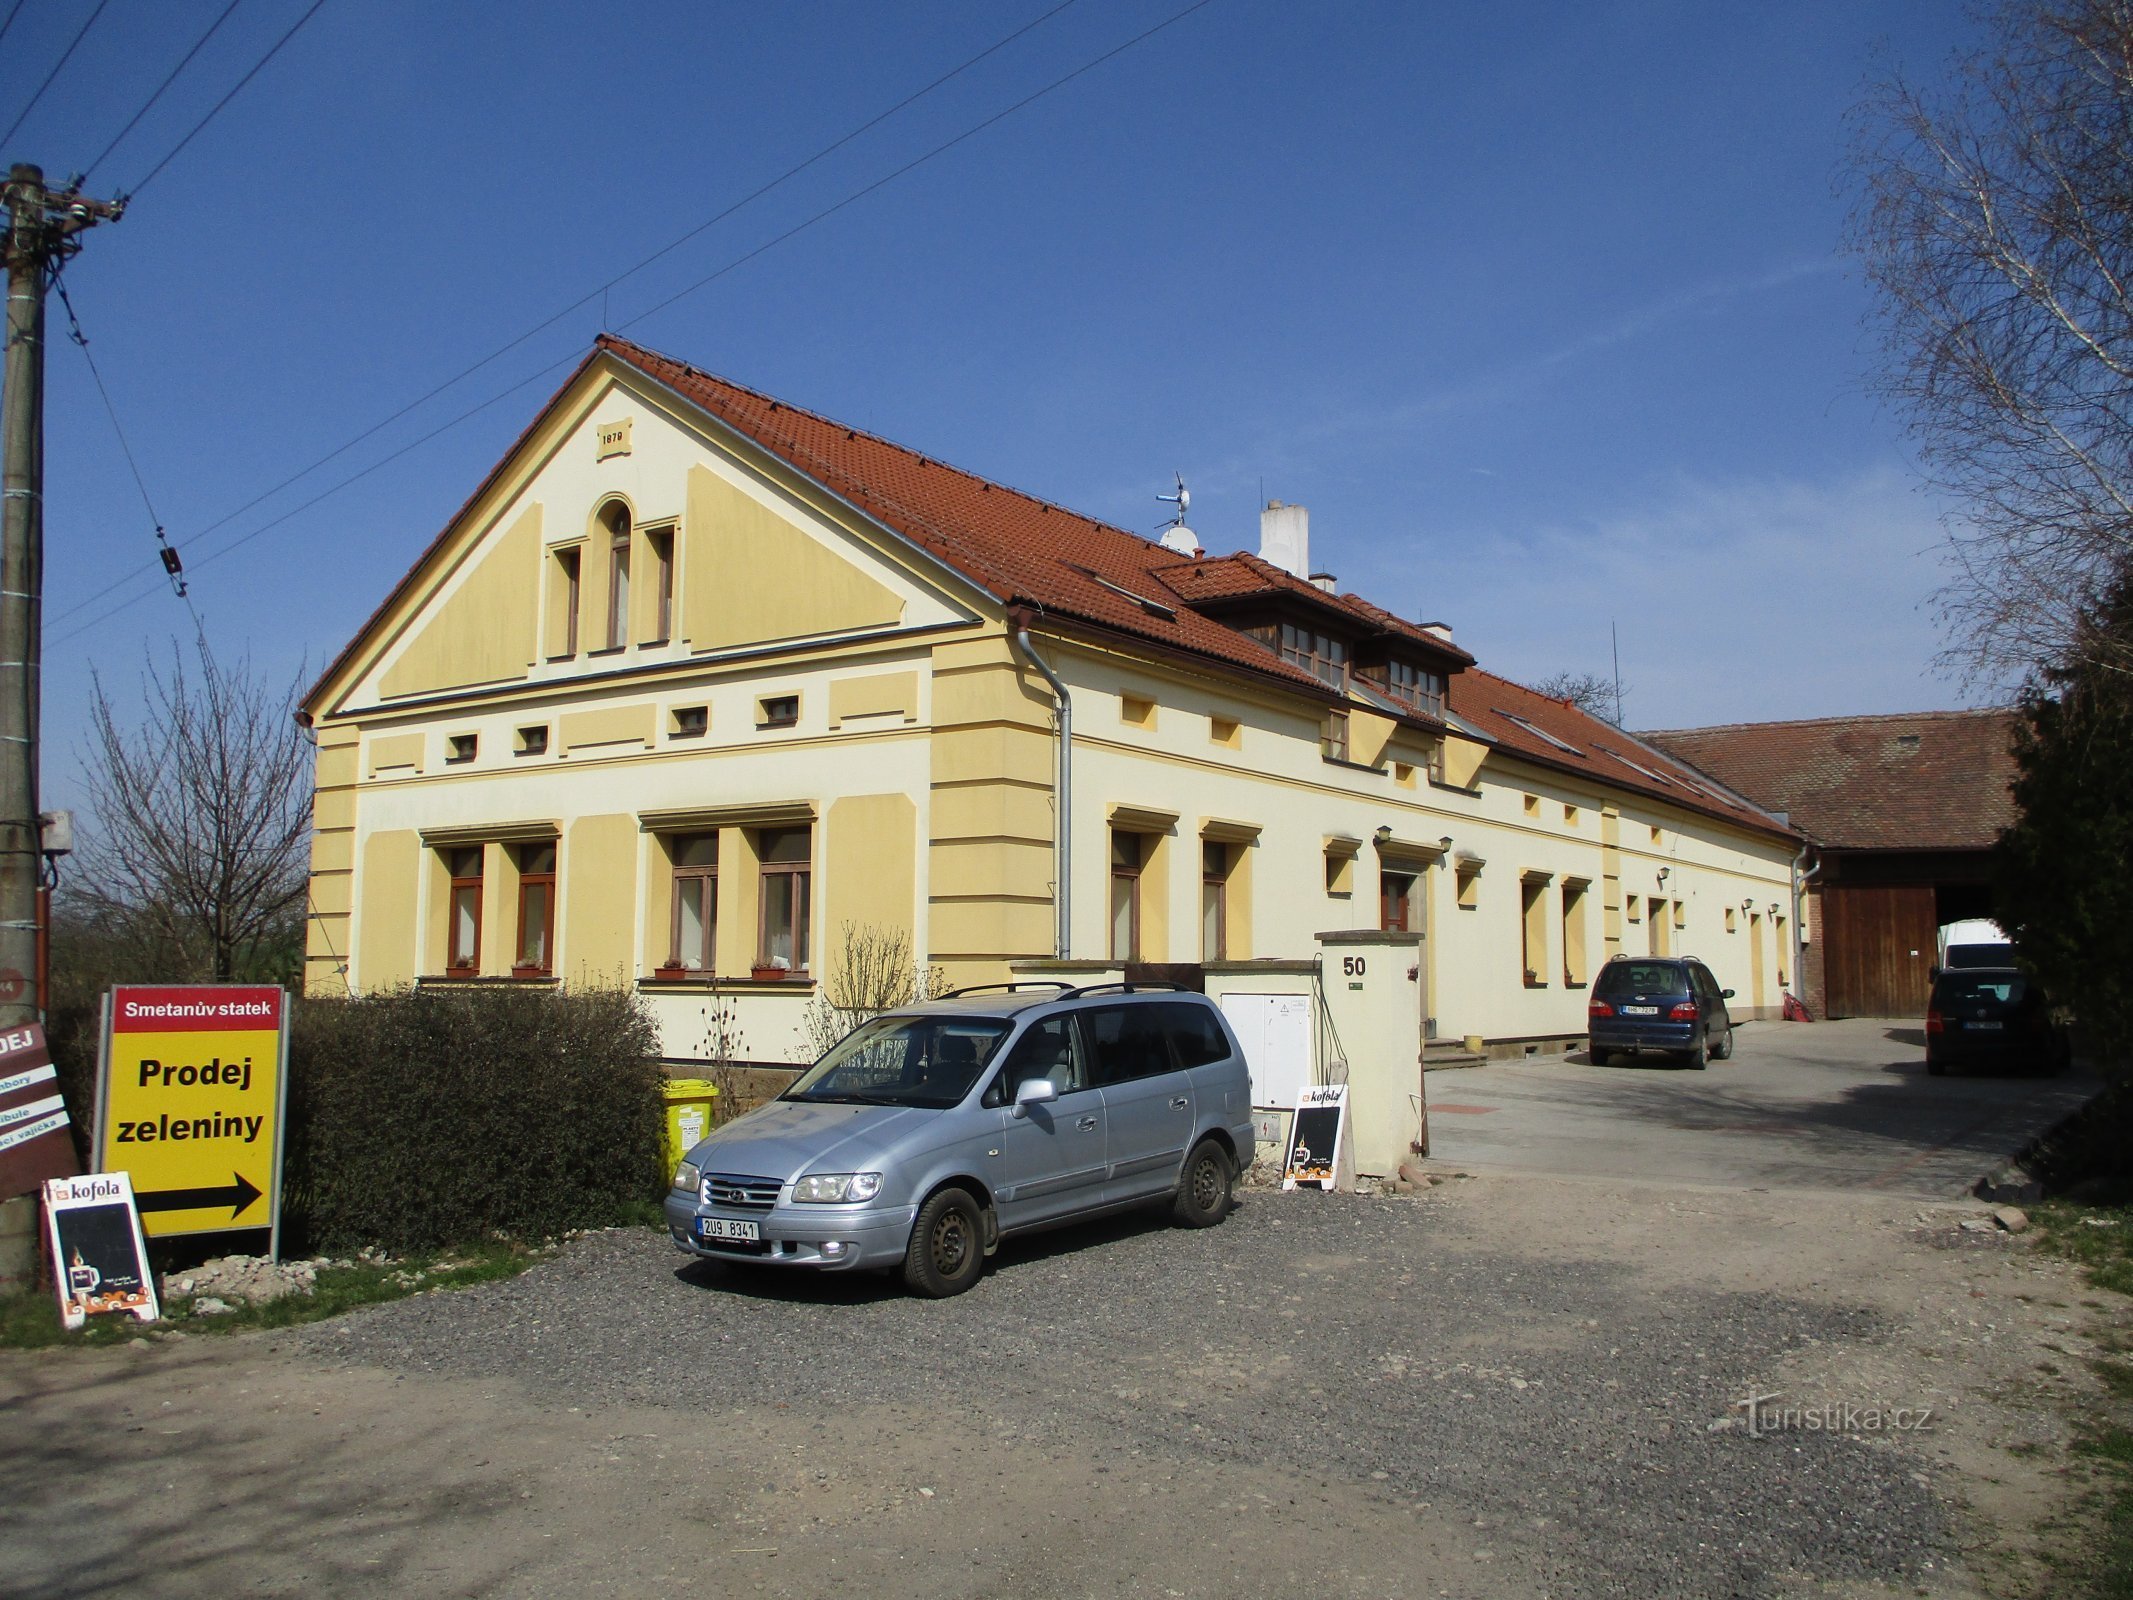 Klacovská br. 50 (Hradec Králové)